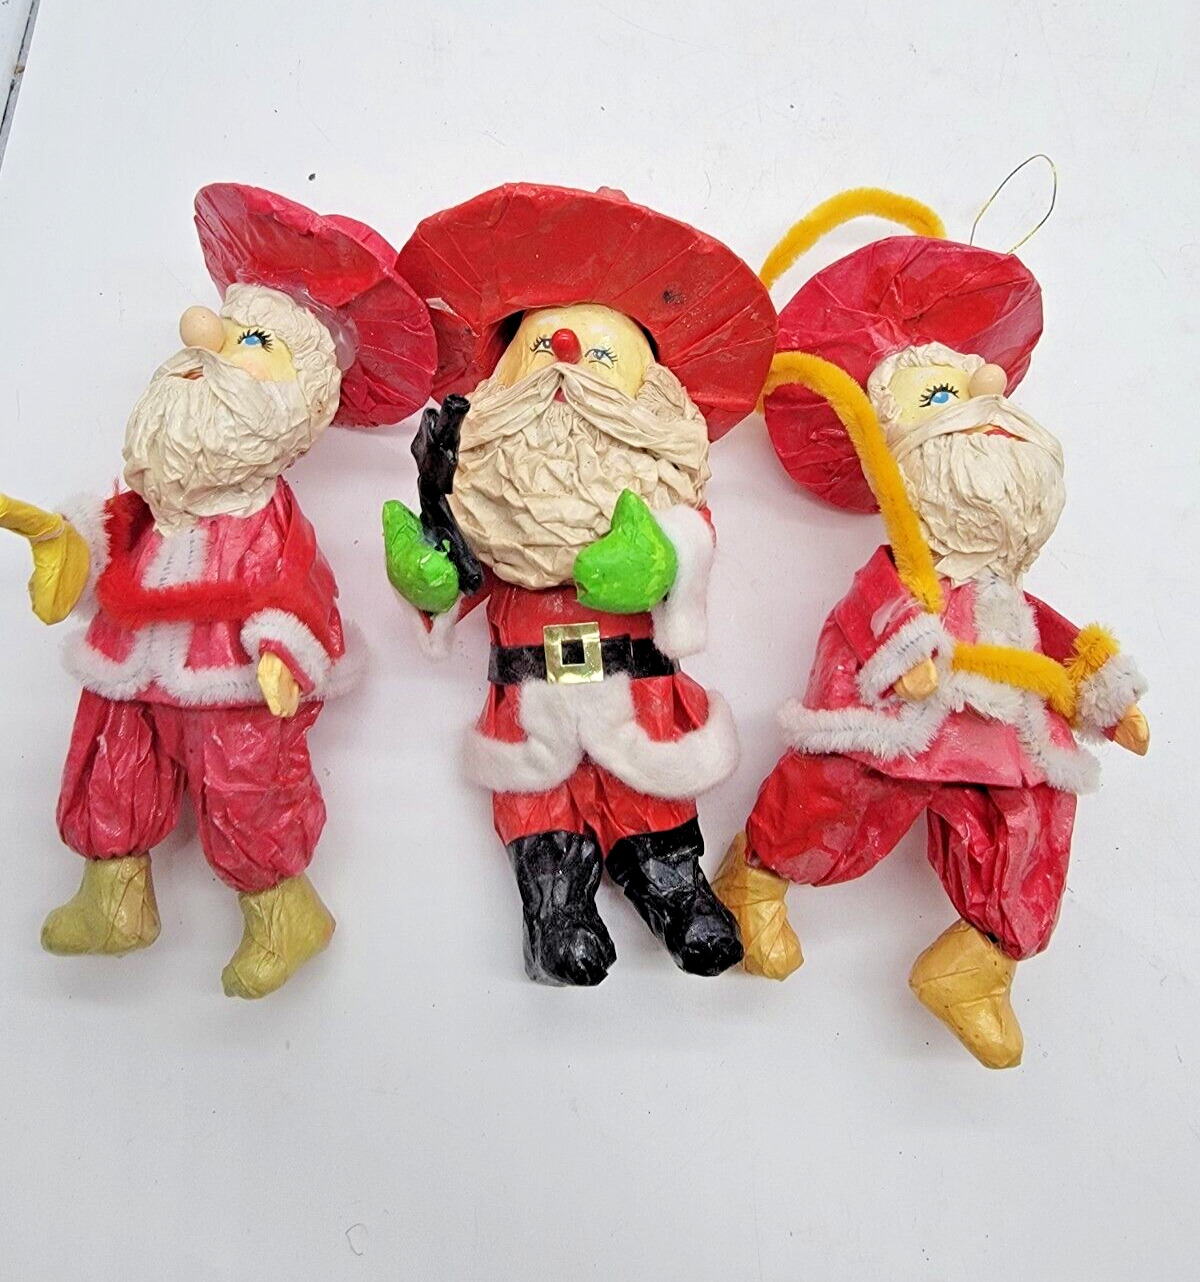 Vintage 3 Western Santa Claus Paper Mache Figures 4” Christmas Ornaments